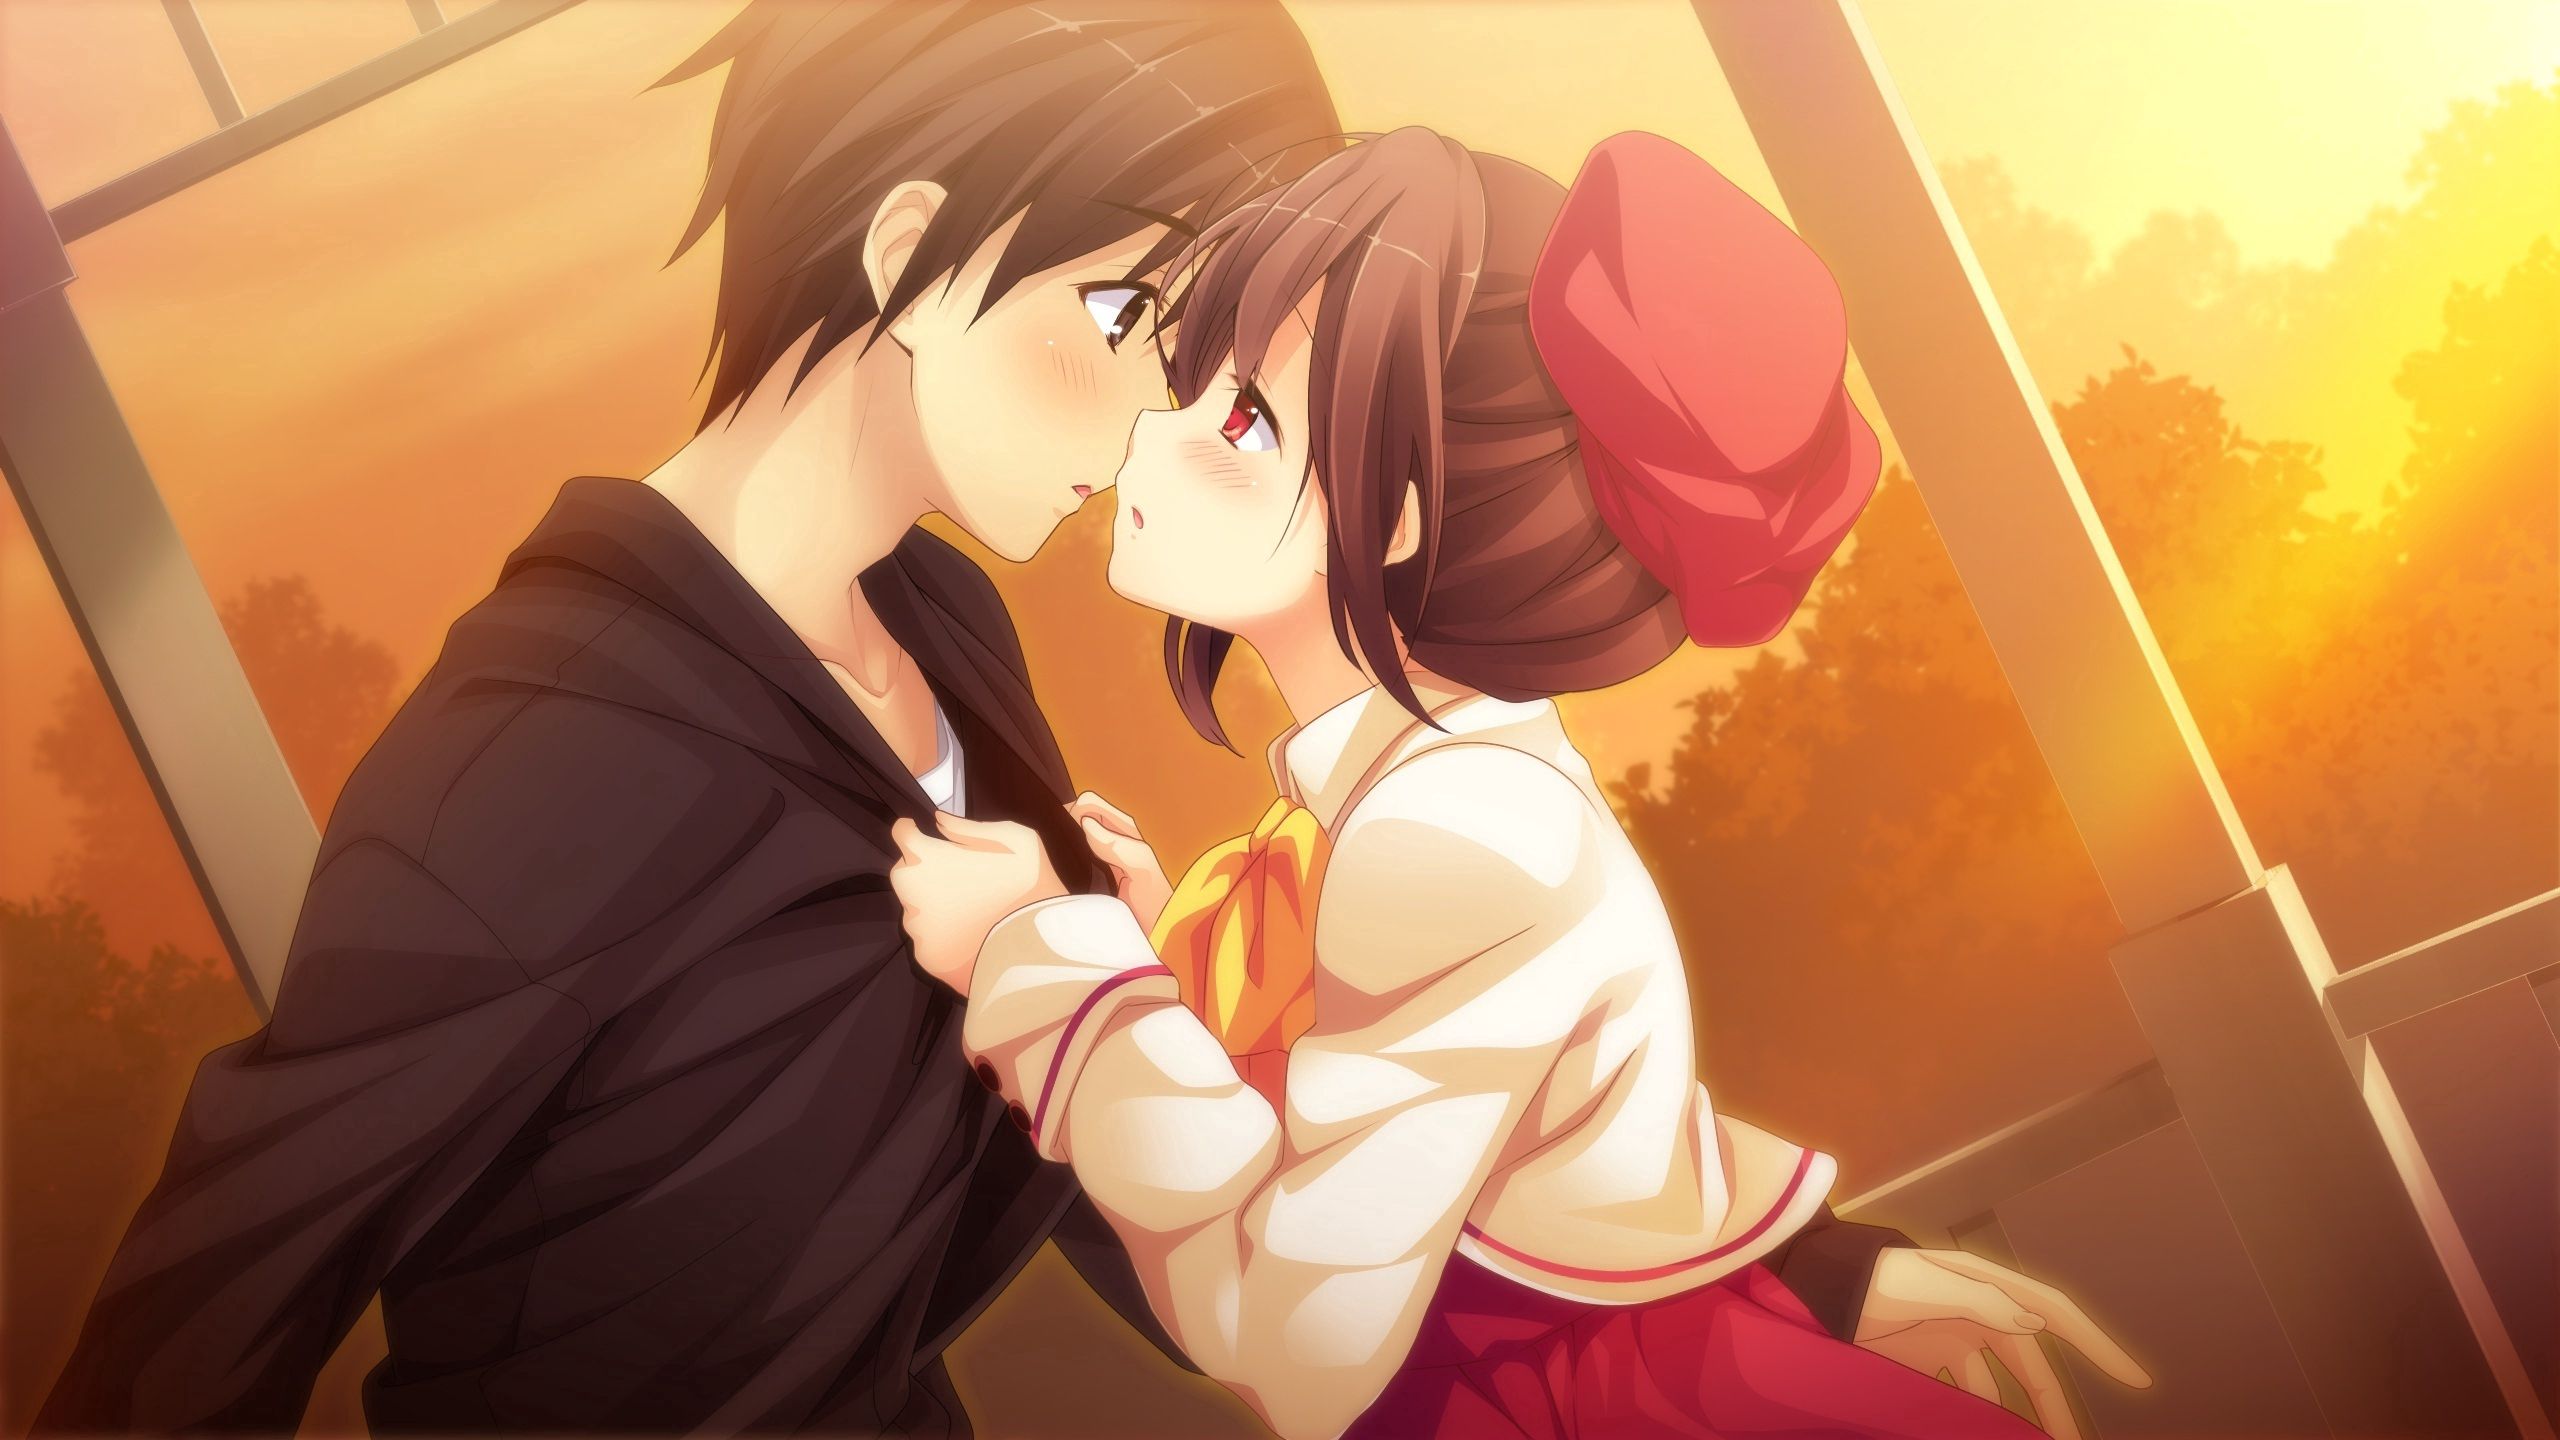 kiss, couple, pair, guy, girl, anime, sunset, art lock screen backgrounds